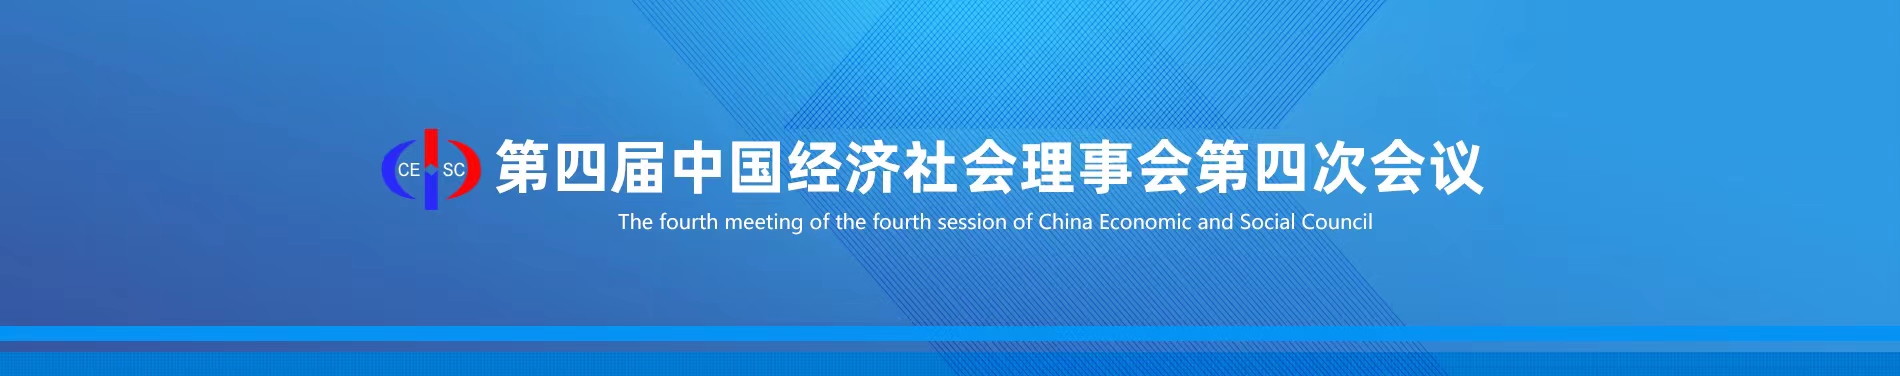 第四届中国经济社会理事会第四次会议